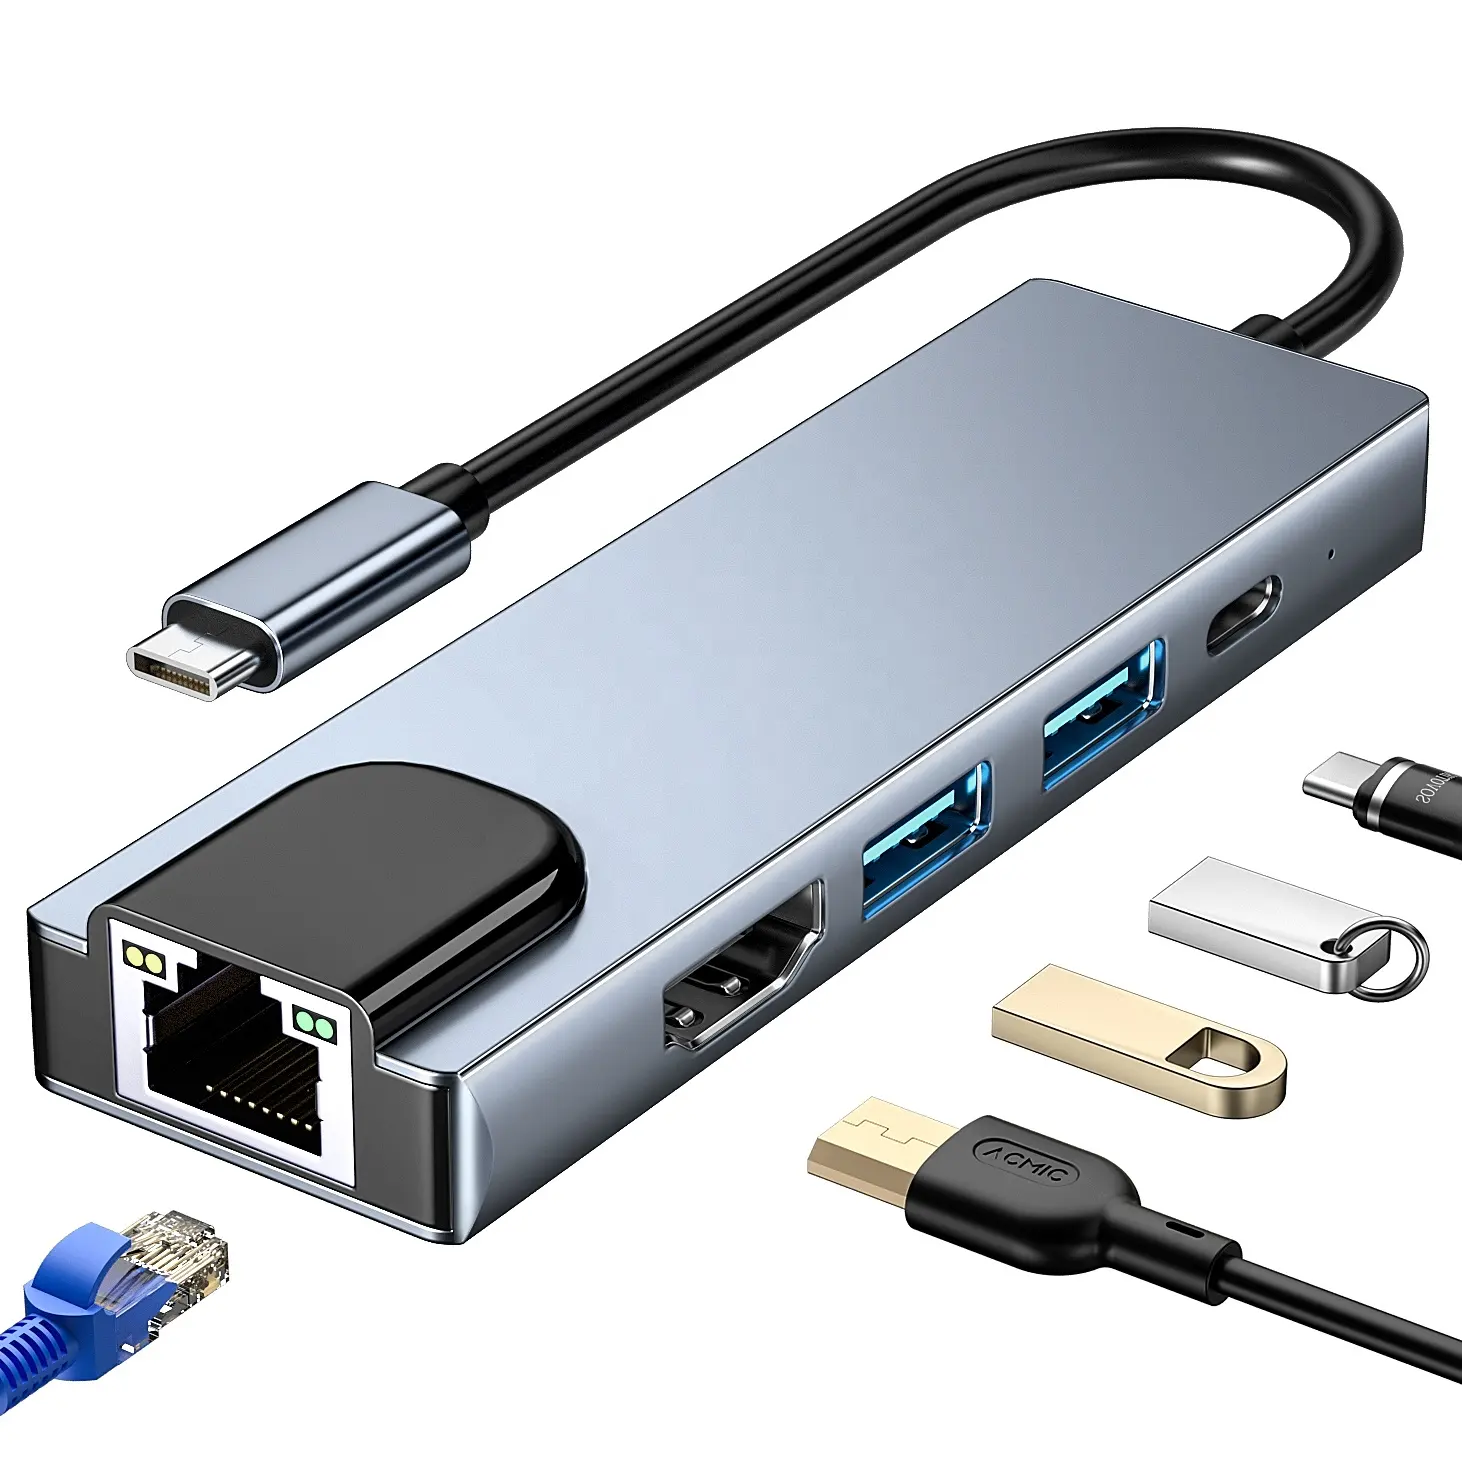 Adattatore per mozzo USB-C 6 in 1 5 in1 adattatore tipo-C convertitore 4K 60hz RJ45 Lan Ethernet USB 3.0 USB C Hub Dock splitter HUB